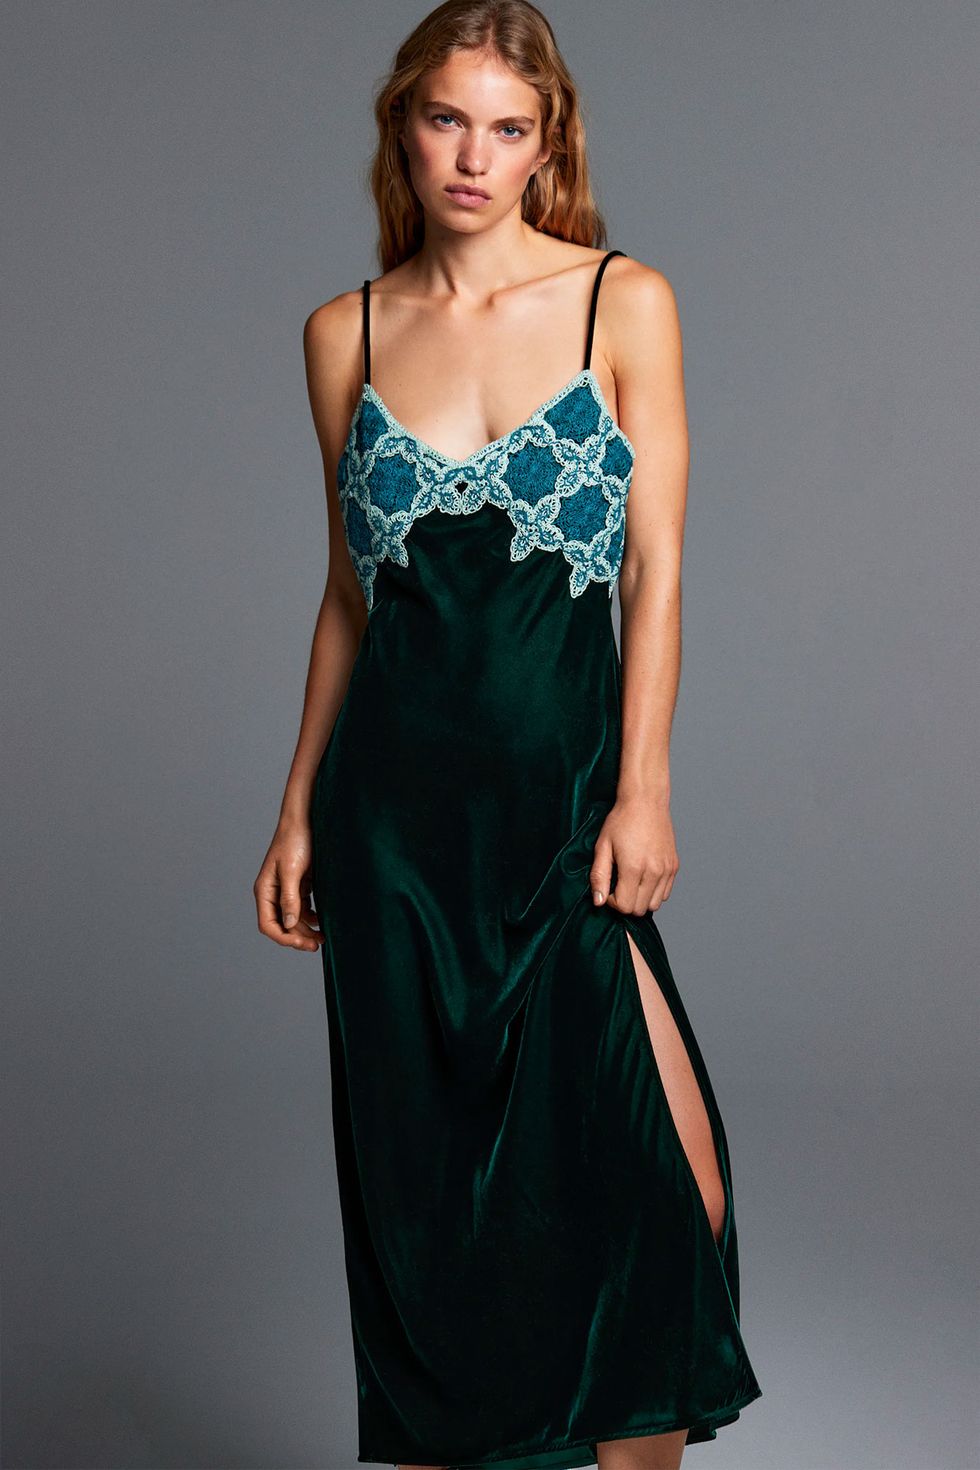 verde, midi el vestido de Zara ideal